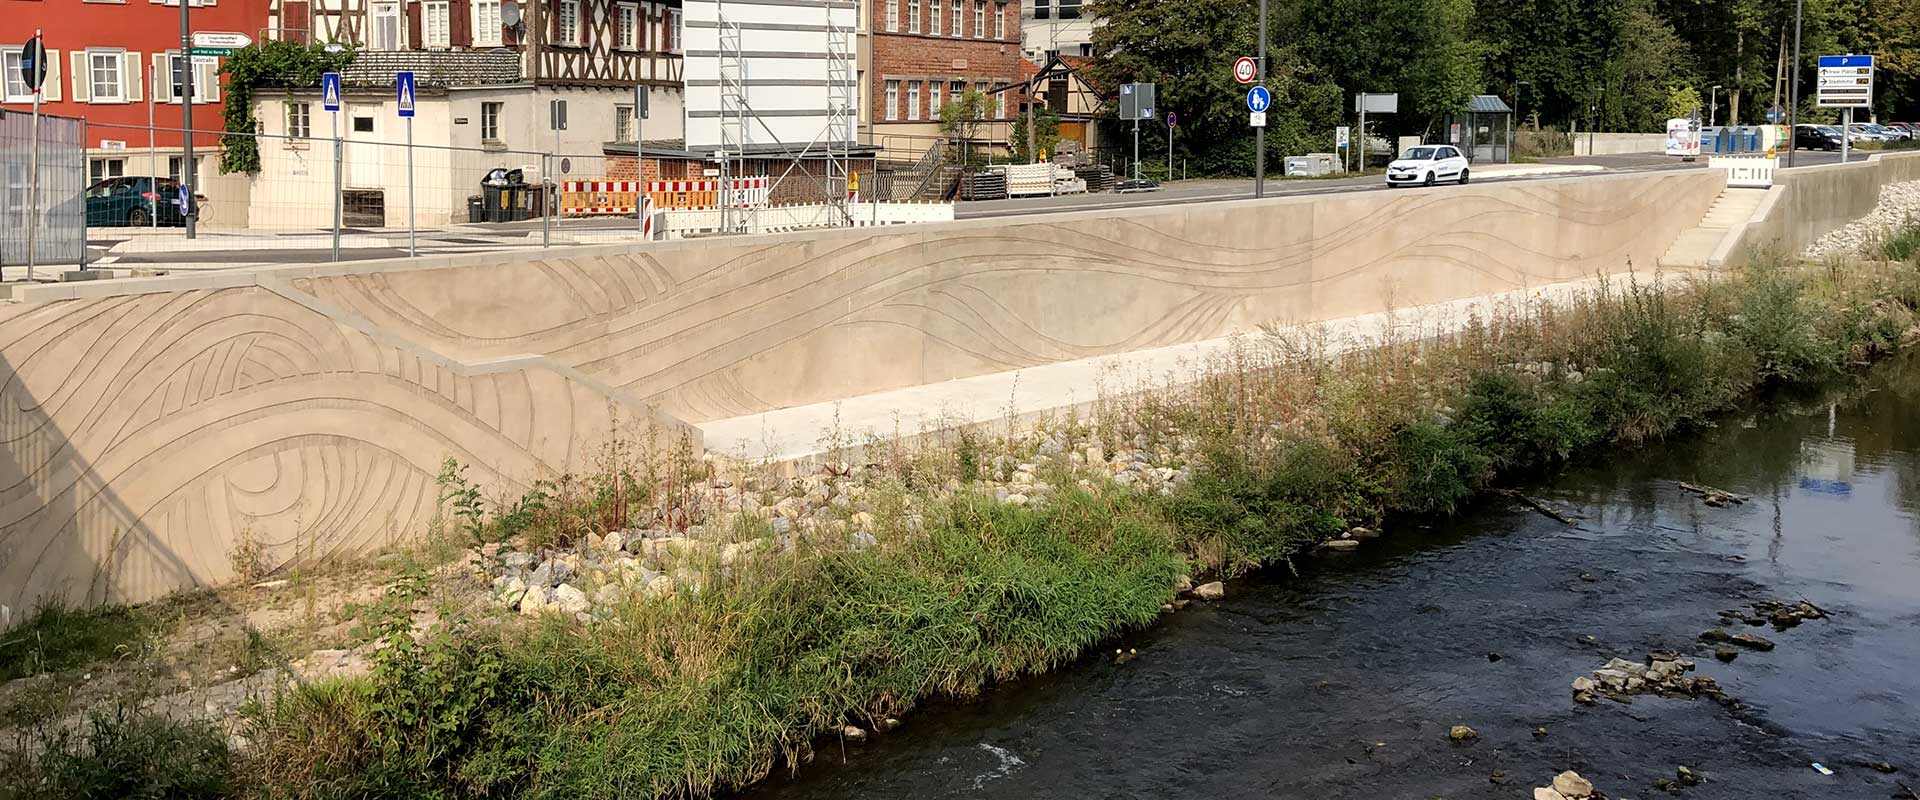 Es ist die neue wellenartig gestaltete Hochwasserschutzmauer im Bereich des neuen Tiefufers an der Murr in der Backnanger Talstraße nach der Aspacher Brücke zu sehen. Im Hintergrund sieht man noch die Baustellensicherung und das Baustellen-Hinweisschild zu dieser Maßnahme.